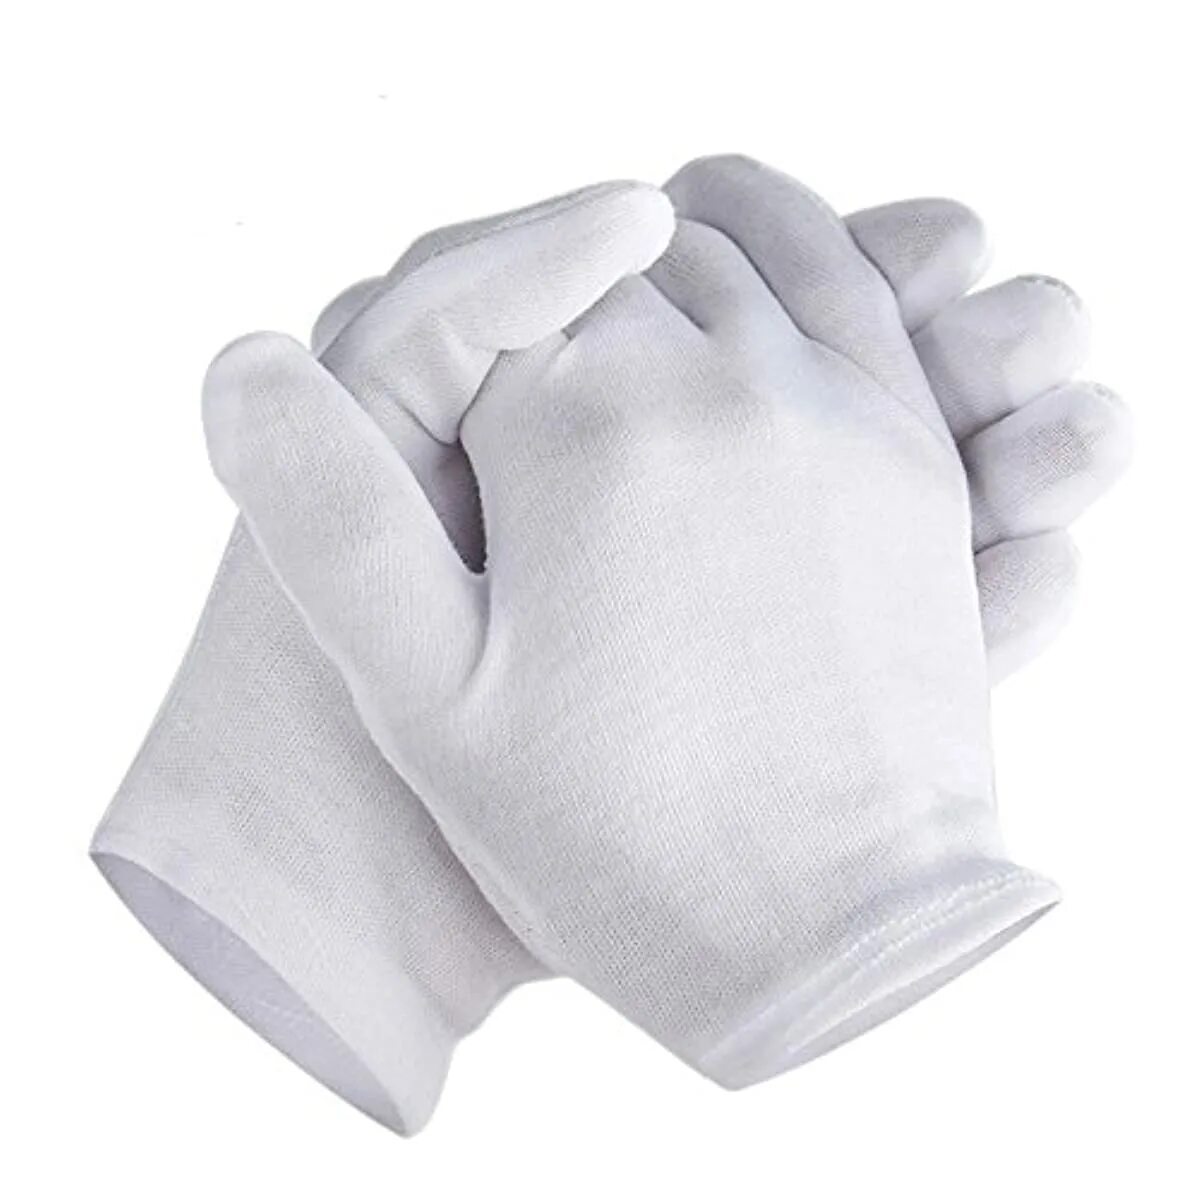 Перчатки вкладыши. Гигиенические перчатки. Перчатки из хлопка. Белые перчатки.